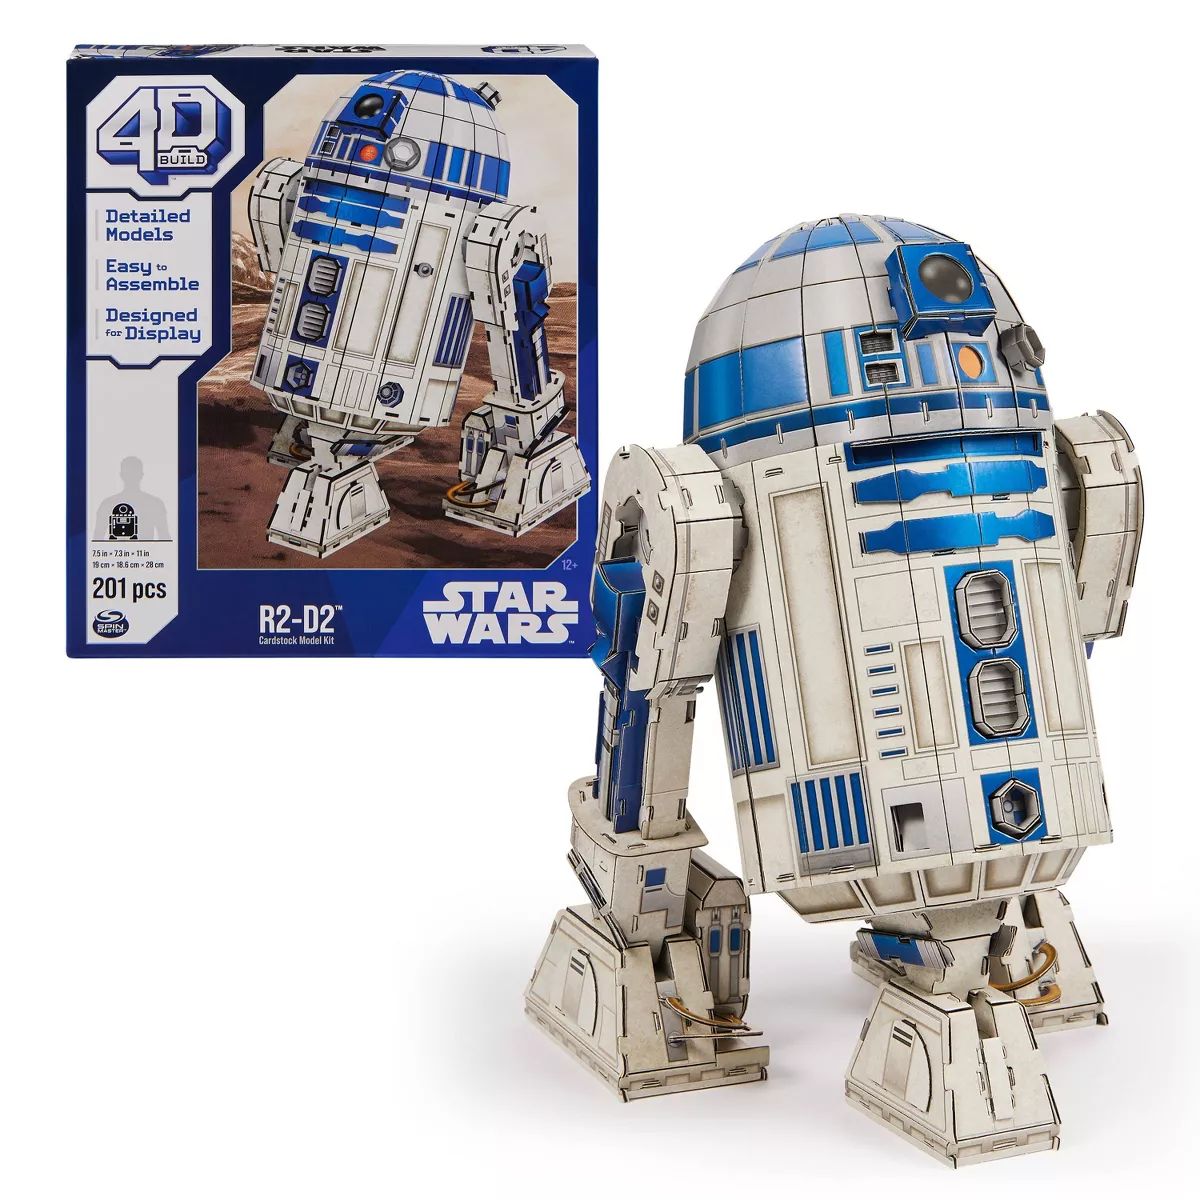 4D BUILD - Star Wars R2-D2 Model Kit Puzzle 201pc | Target